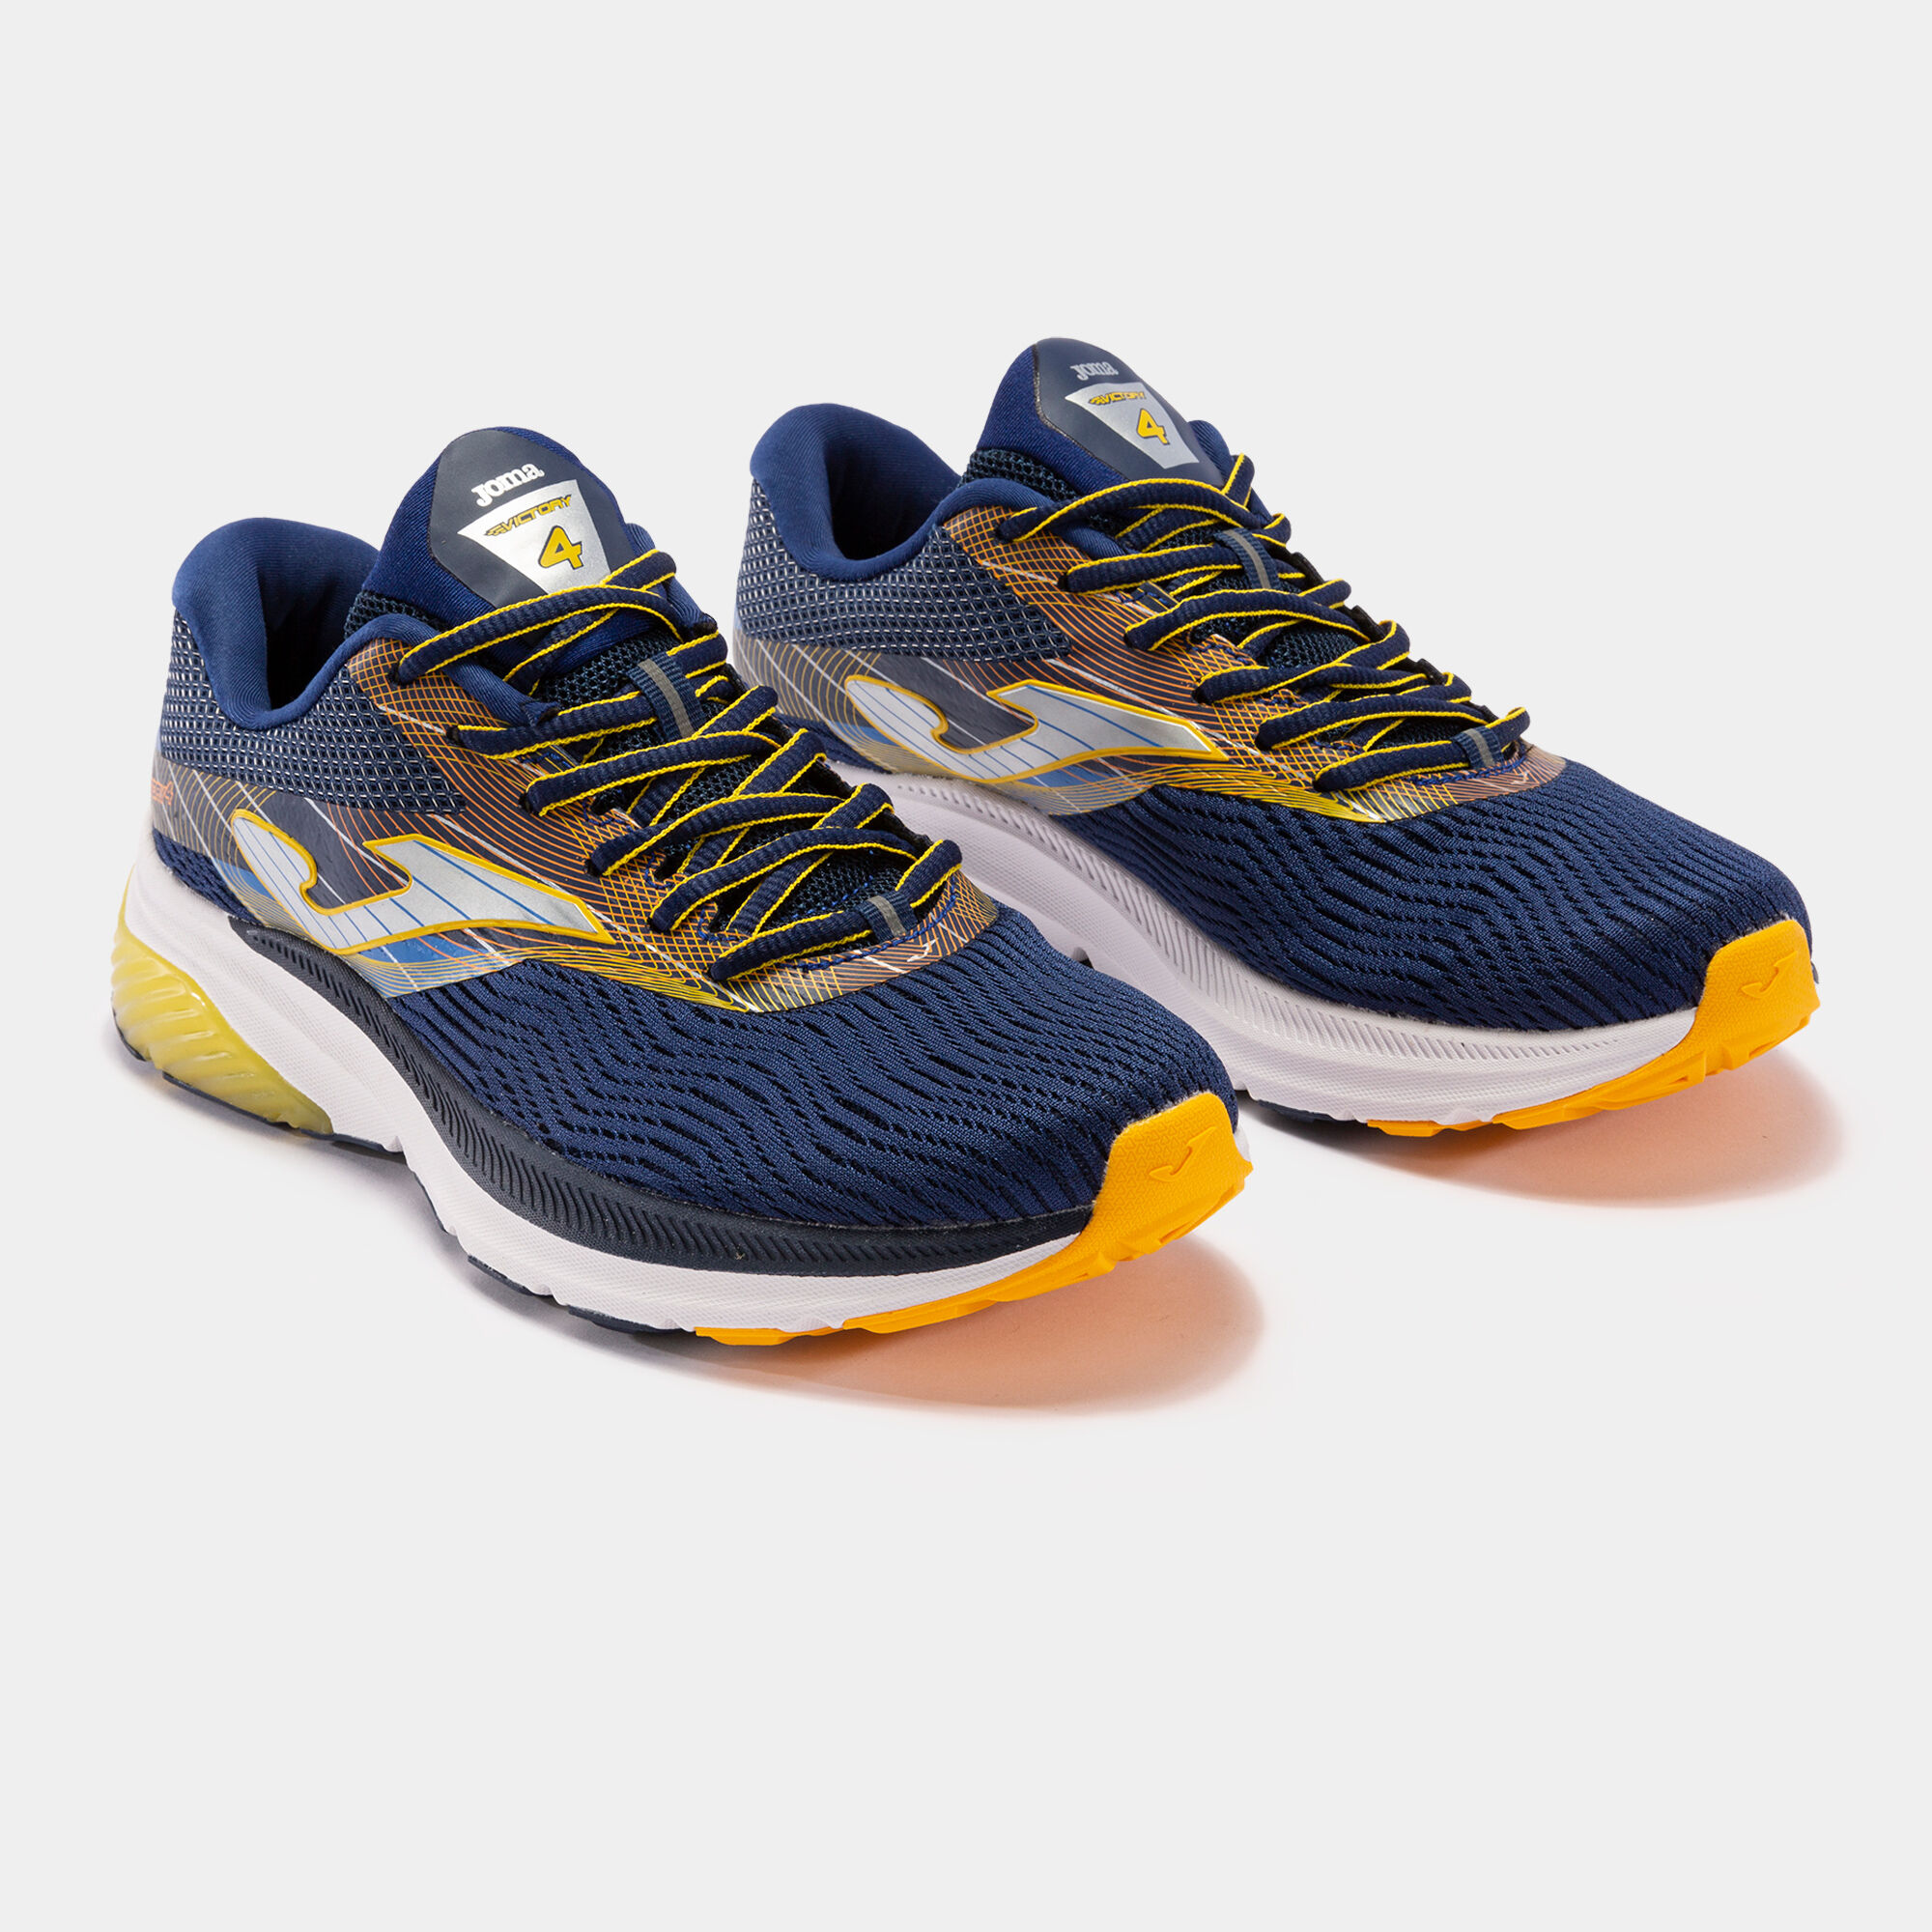 En respuesta a la Tamano relativo Mercurio Running shoes Victory 22 man navy blue yellow